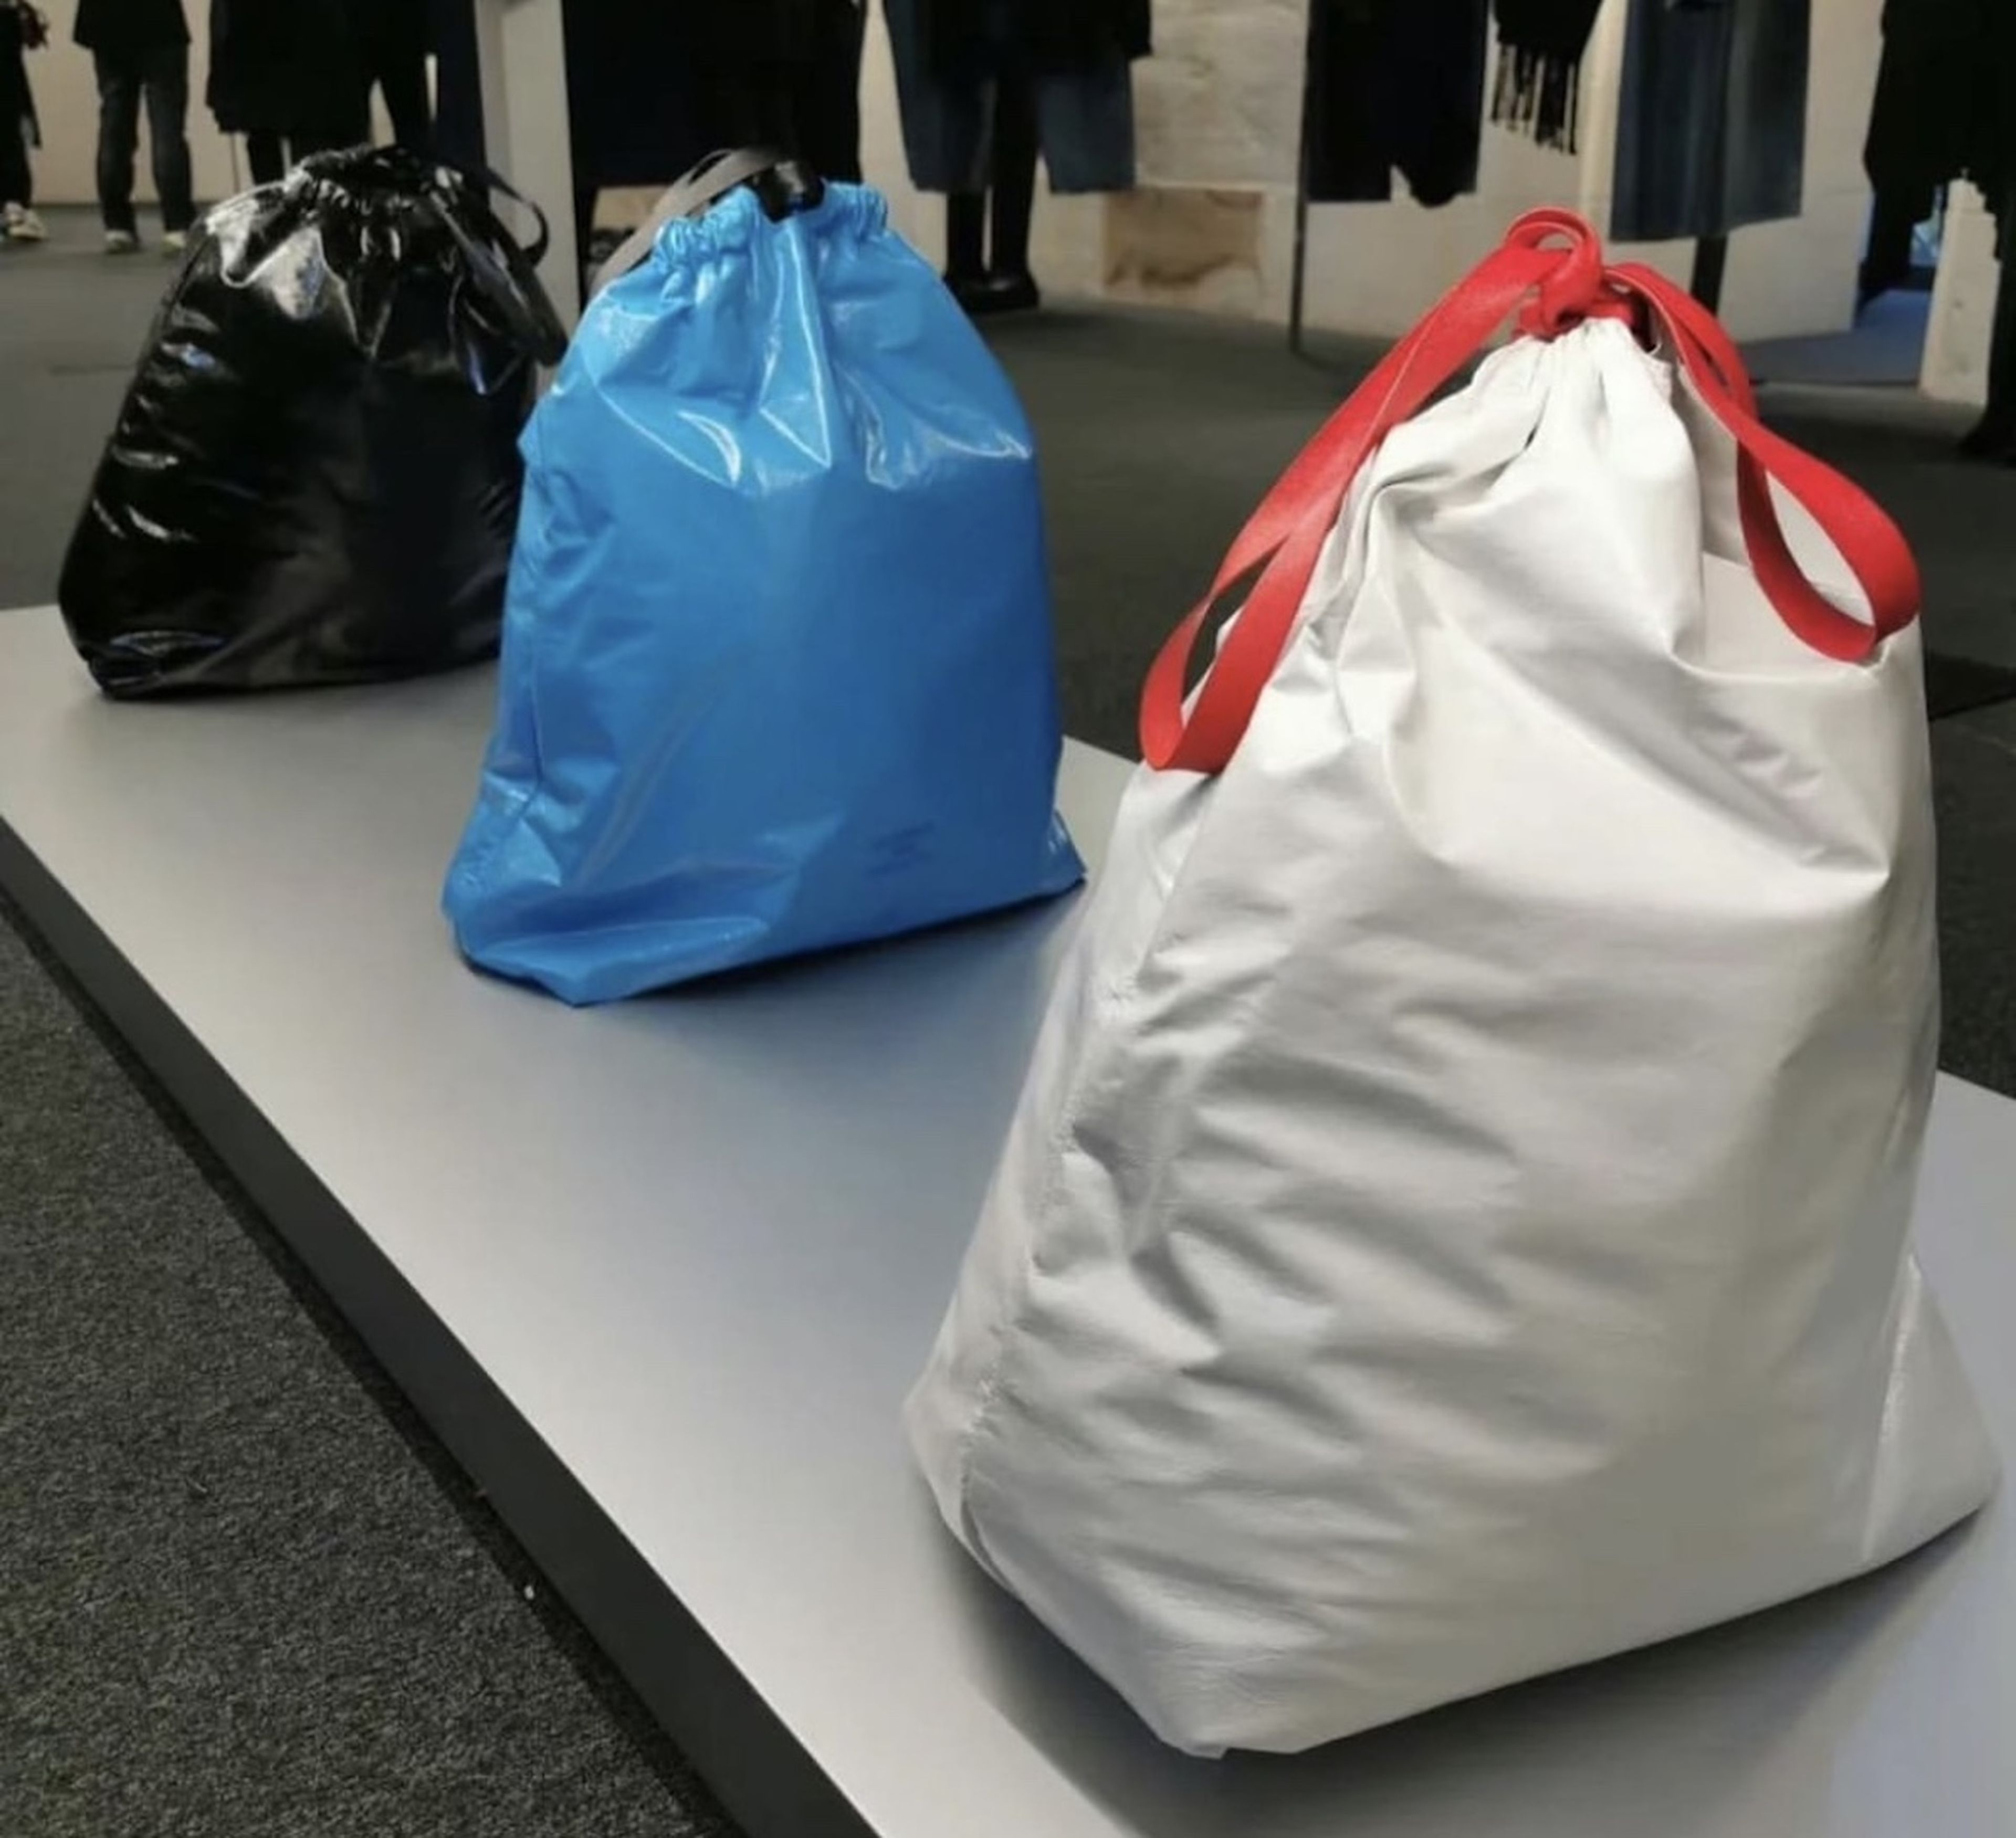 estilo de acuerdo a limpiar Balenciaga vende un bolso que imita una bolsa de basura por 1.750 euros |  Business Insider España